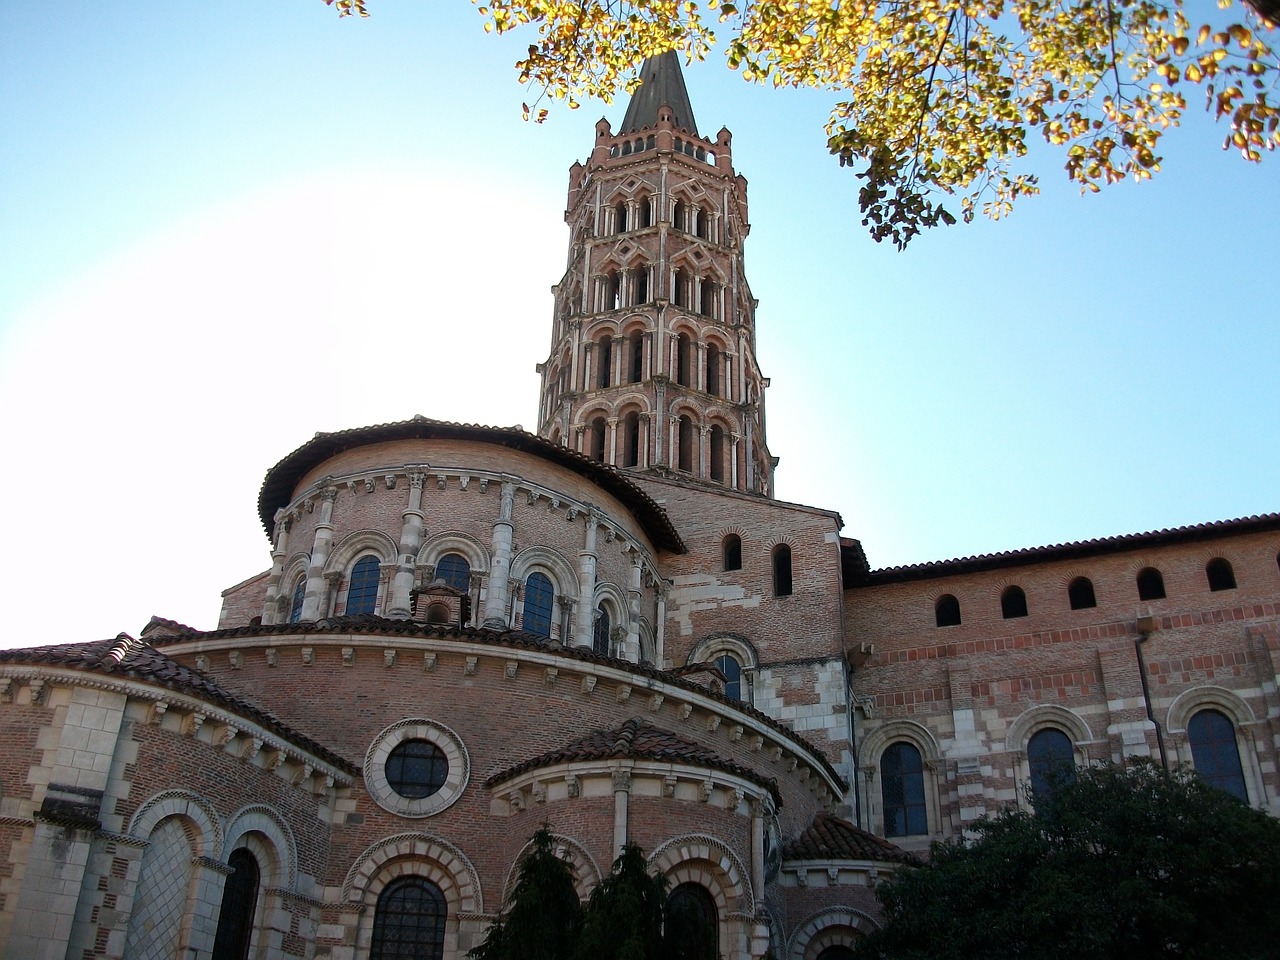 Les guides locaux vous feront visiter la cathédrale de Toulouse, mais aussi les églises moins connues